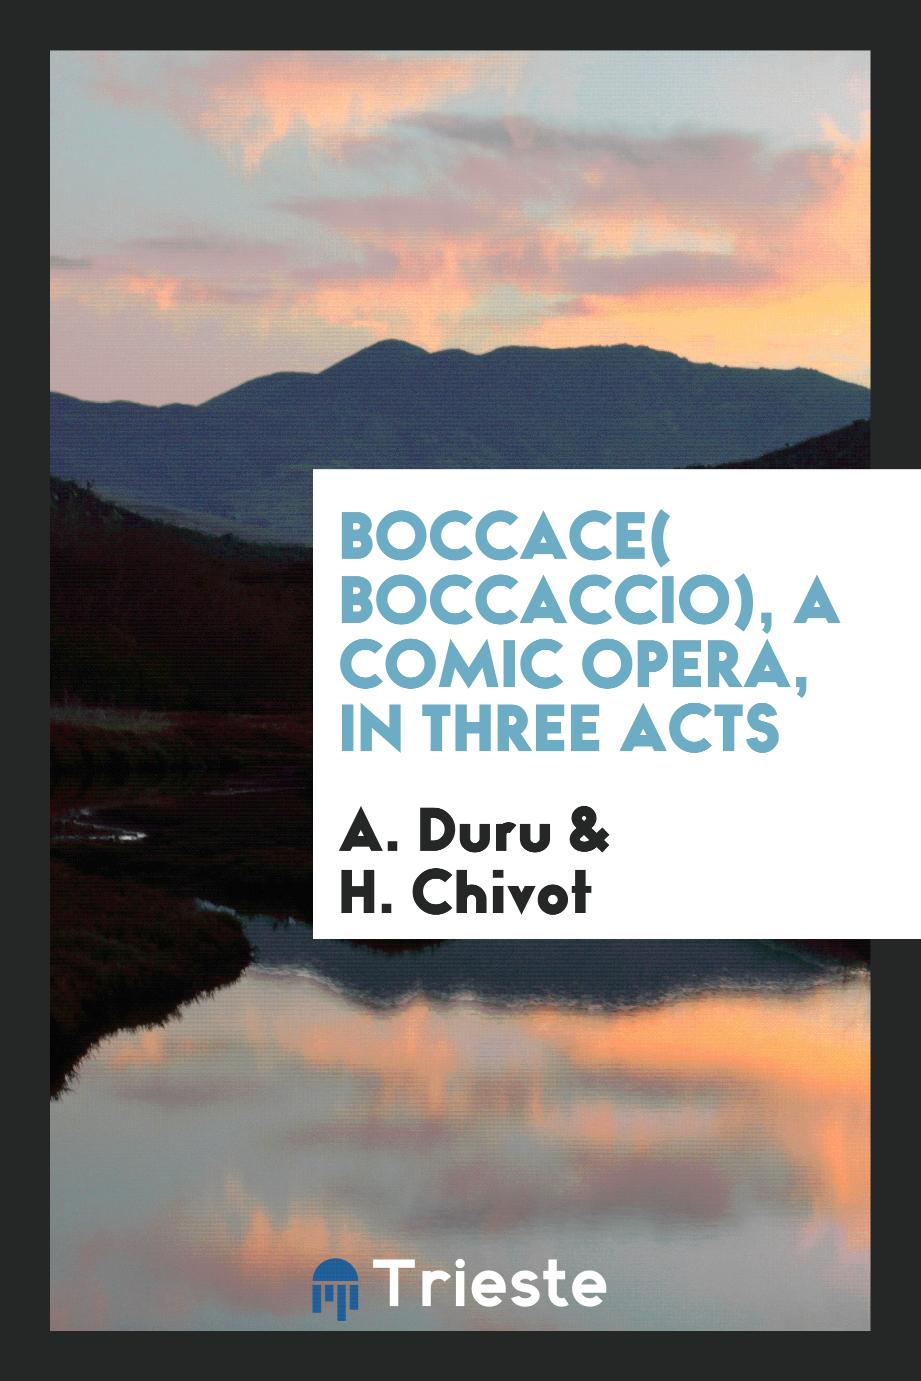 Boccace( boccaccio), a comic opera, in three acts